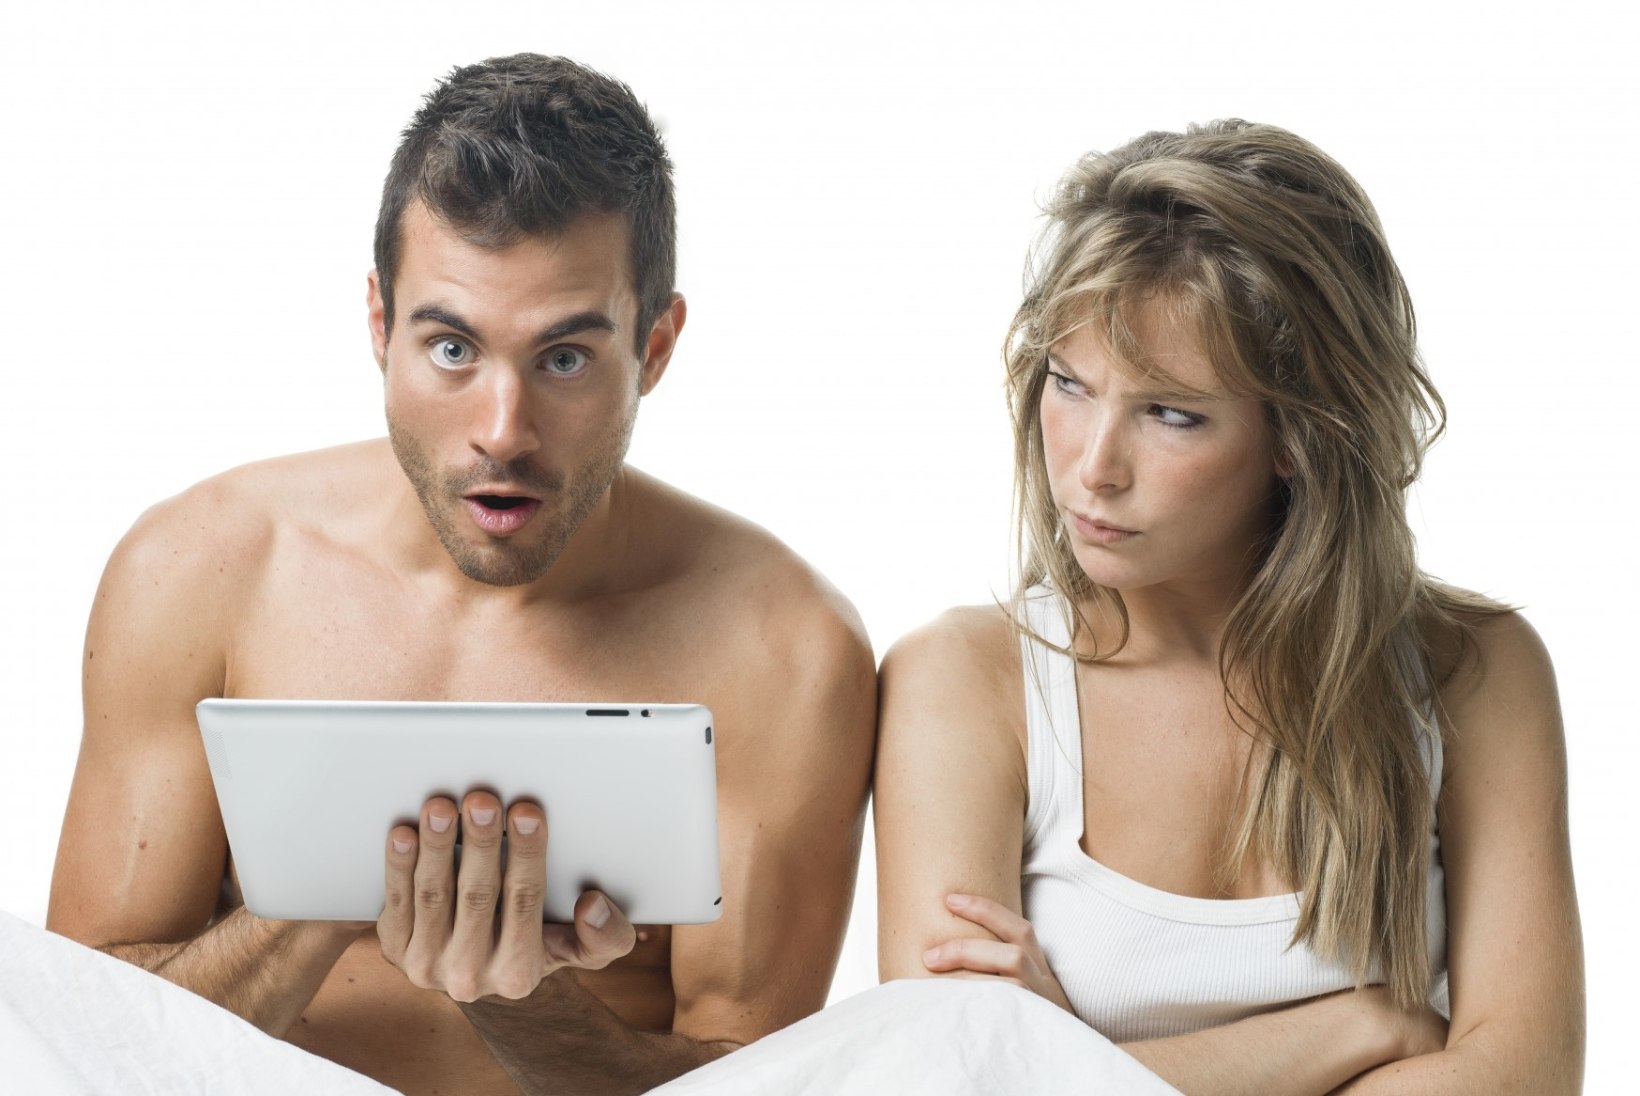 MEHELE: kuidas mõjutab porno vaatamine su seksuaalelu?